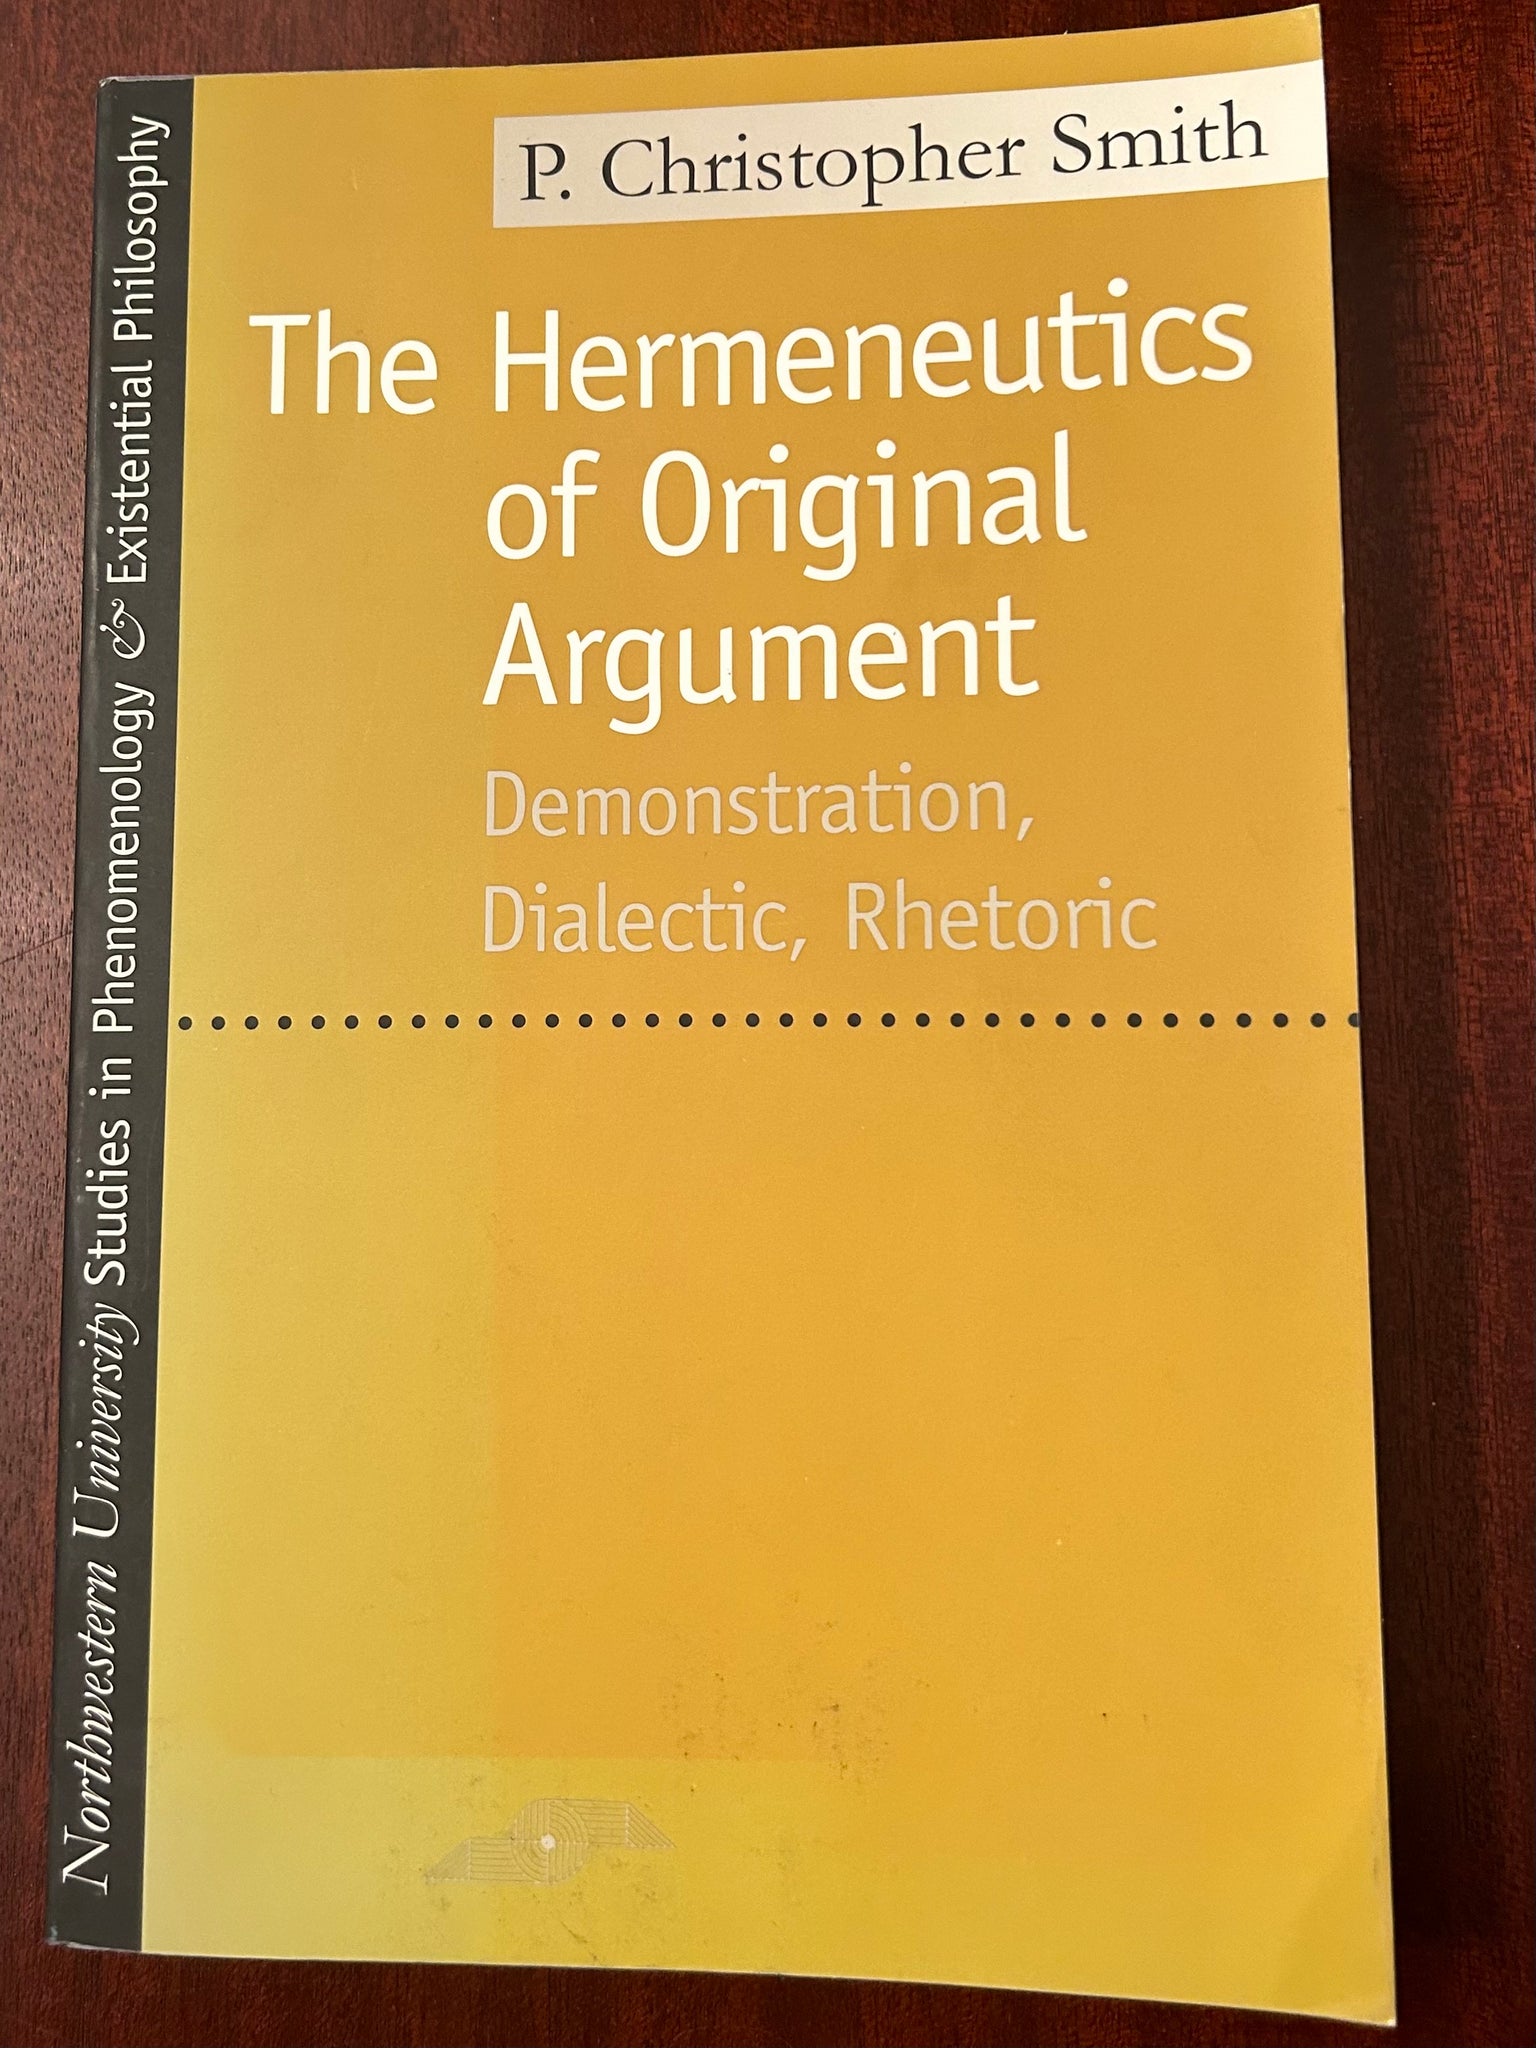 The Hermeneutics of Original Argument  Demonstration of Original Argument Dialectic, Rhetoric